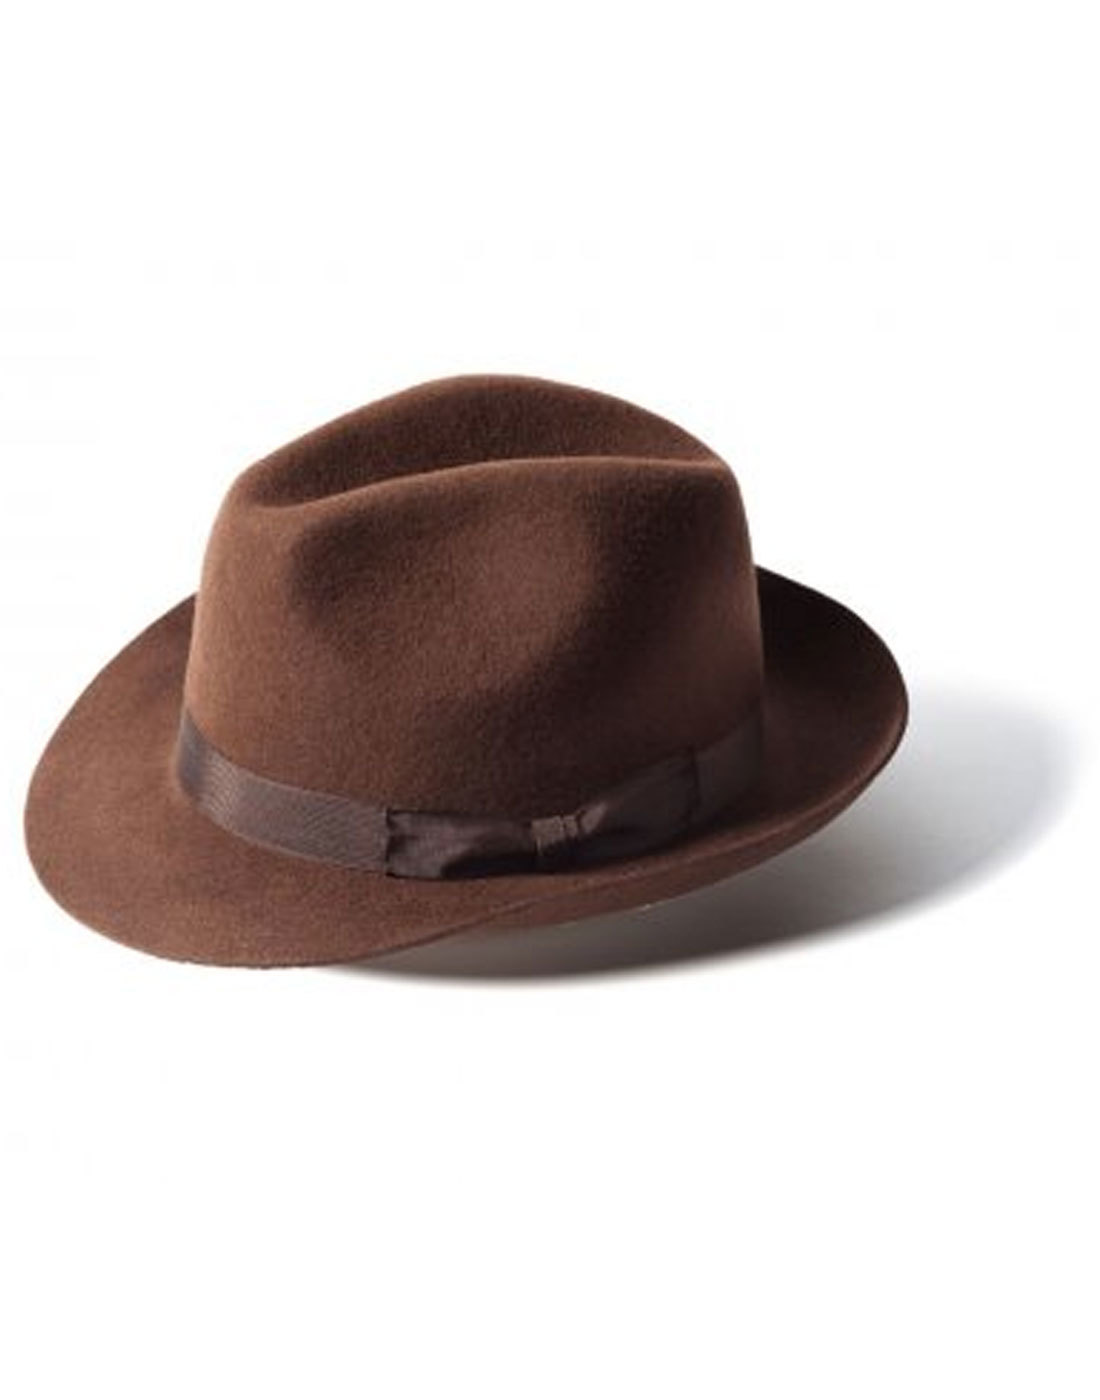 'Doherty' - Indie Trilby Hat (Dark Brown)